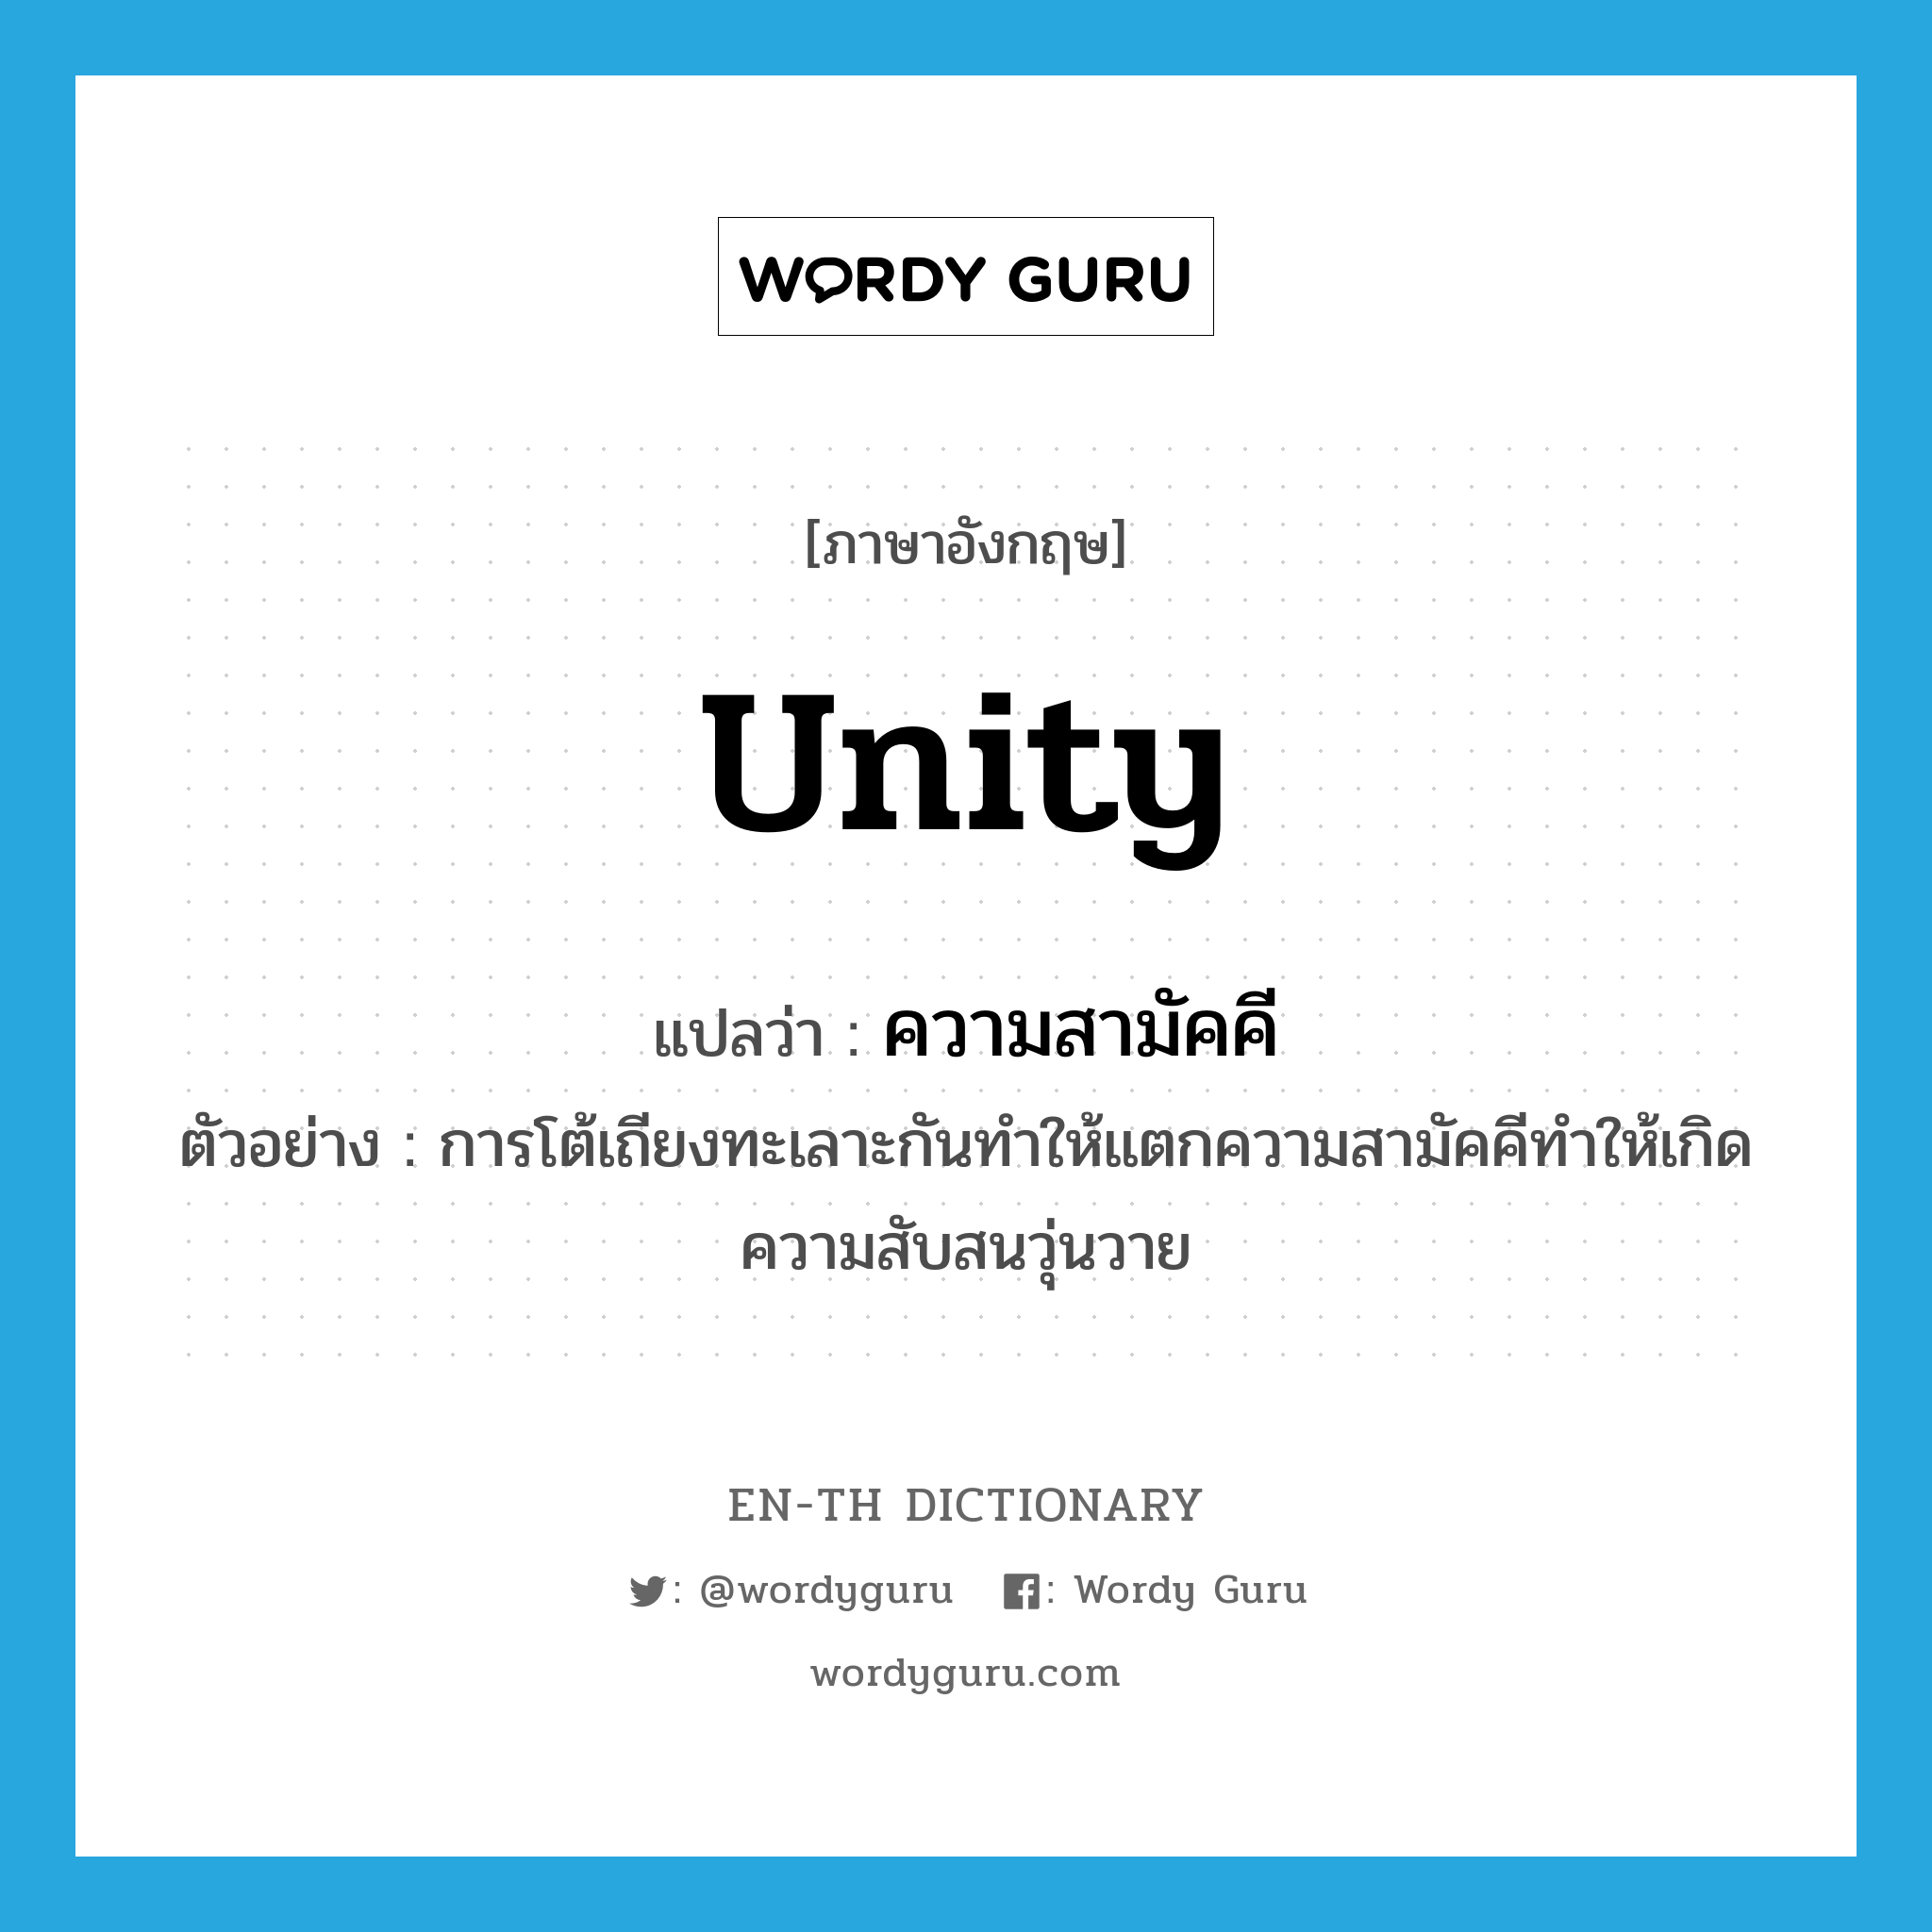 unity แปลว่า?, คำศัพท์ภาษาอังกฤษ unity แปลว่า ความสามัคคี ประเภท N ตัวอย่าง การโต้เถียงทะเลาะกันทำให้แตกความสามัคคีทำให้เกิดความสับสนวุ่นวาย หมวด N